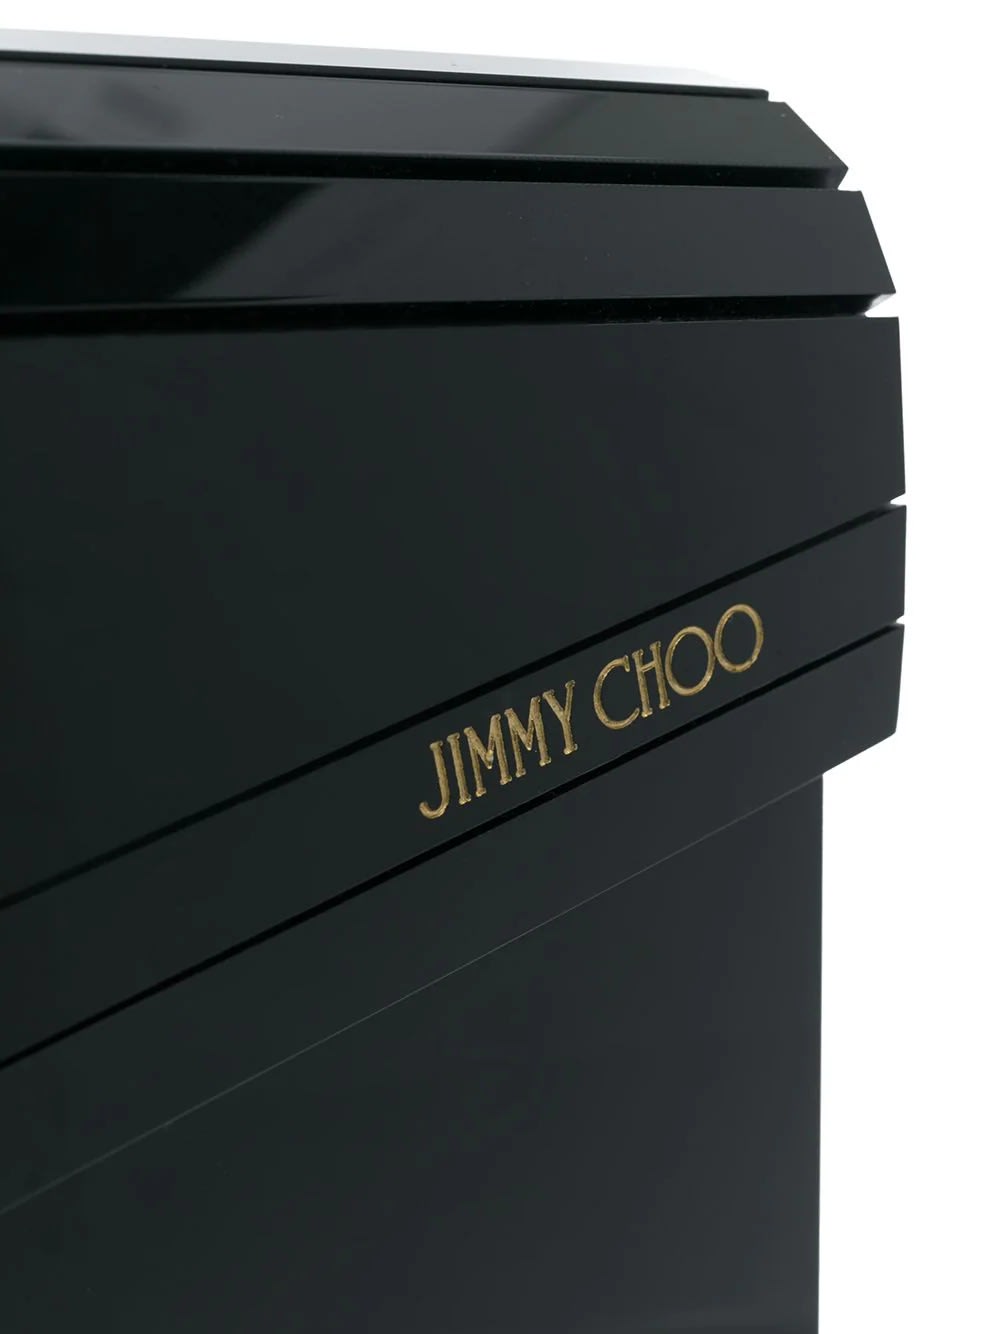 Shop Jimmy Choo Black Acrylic Clutch Bag